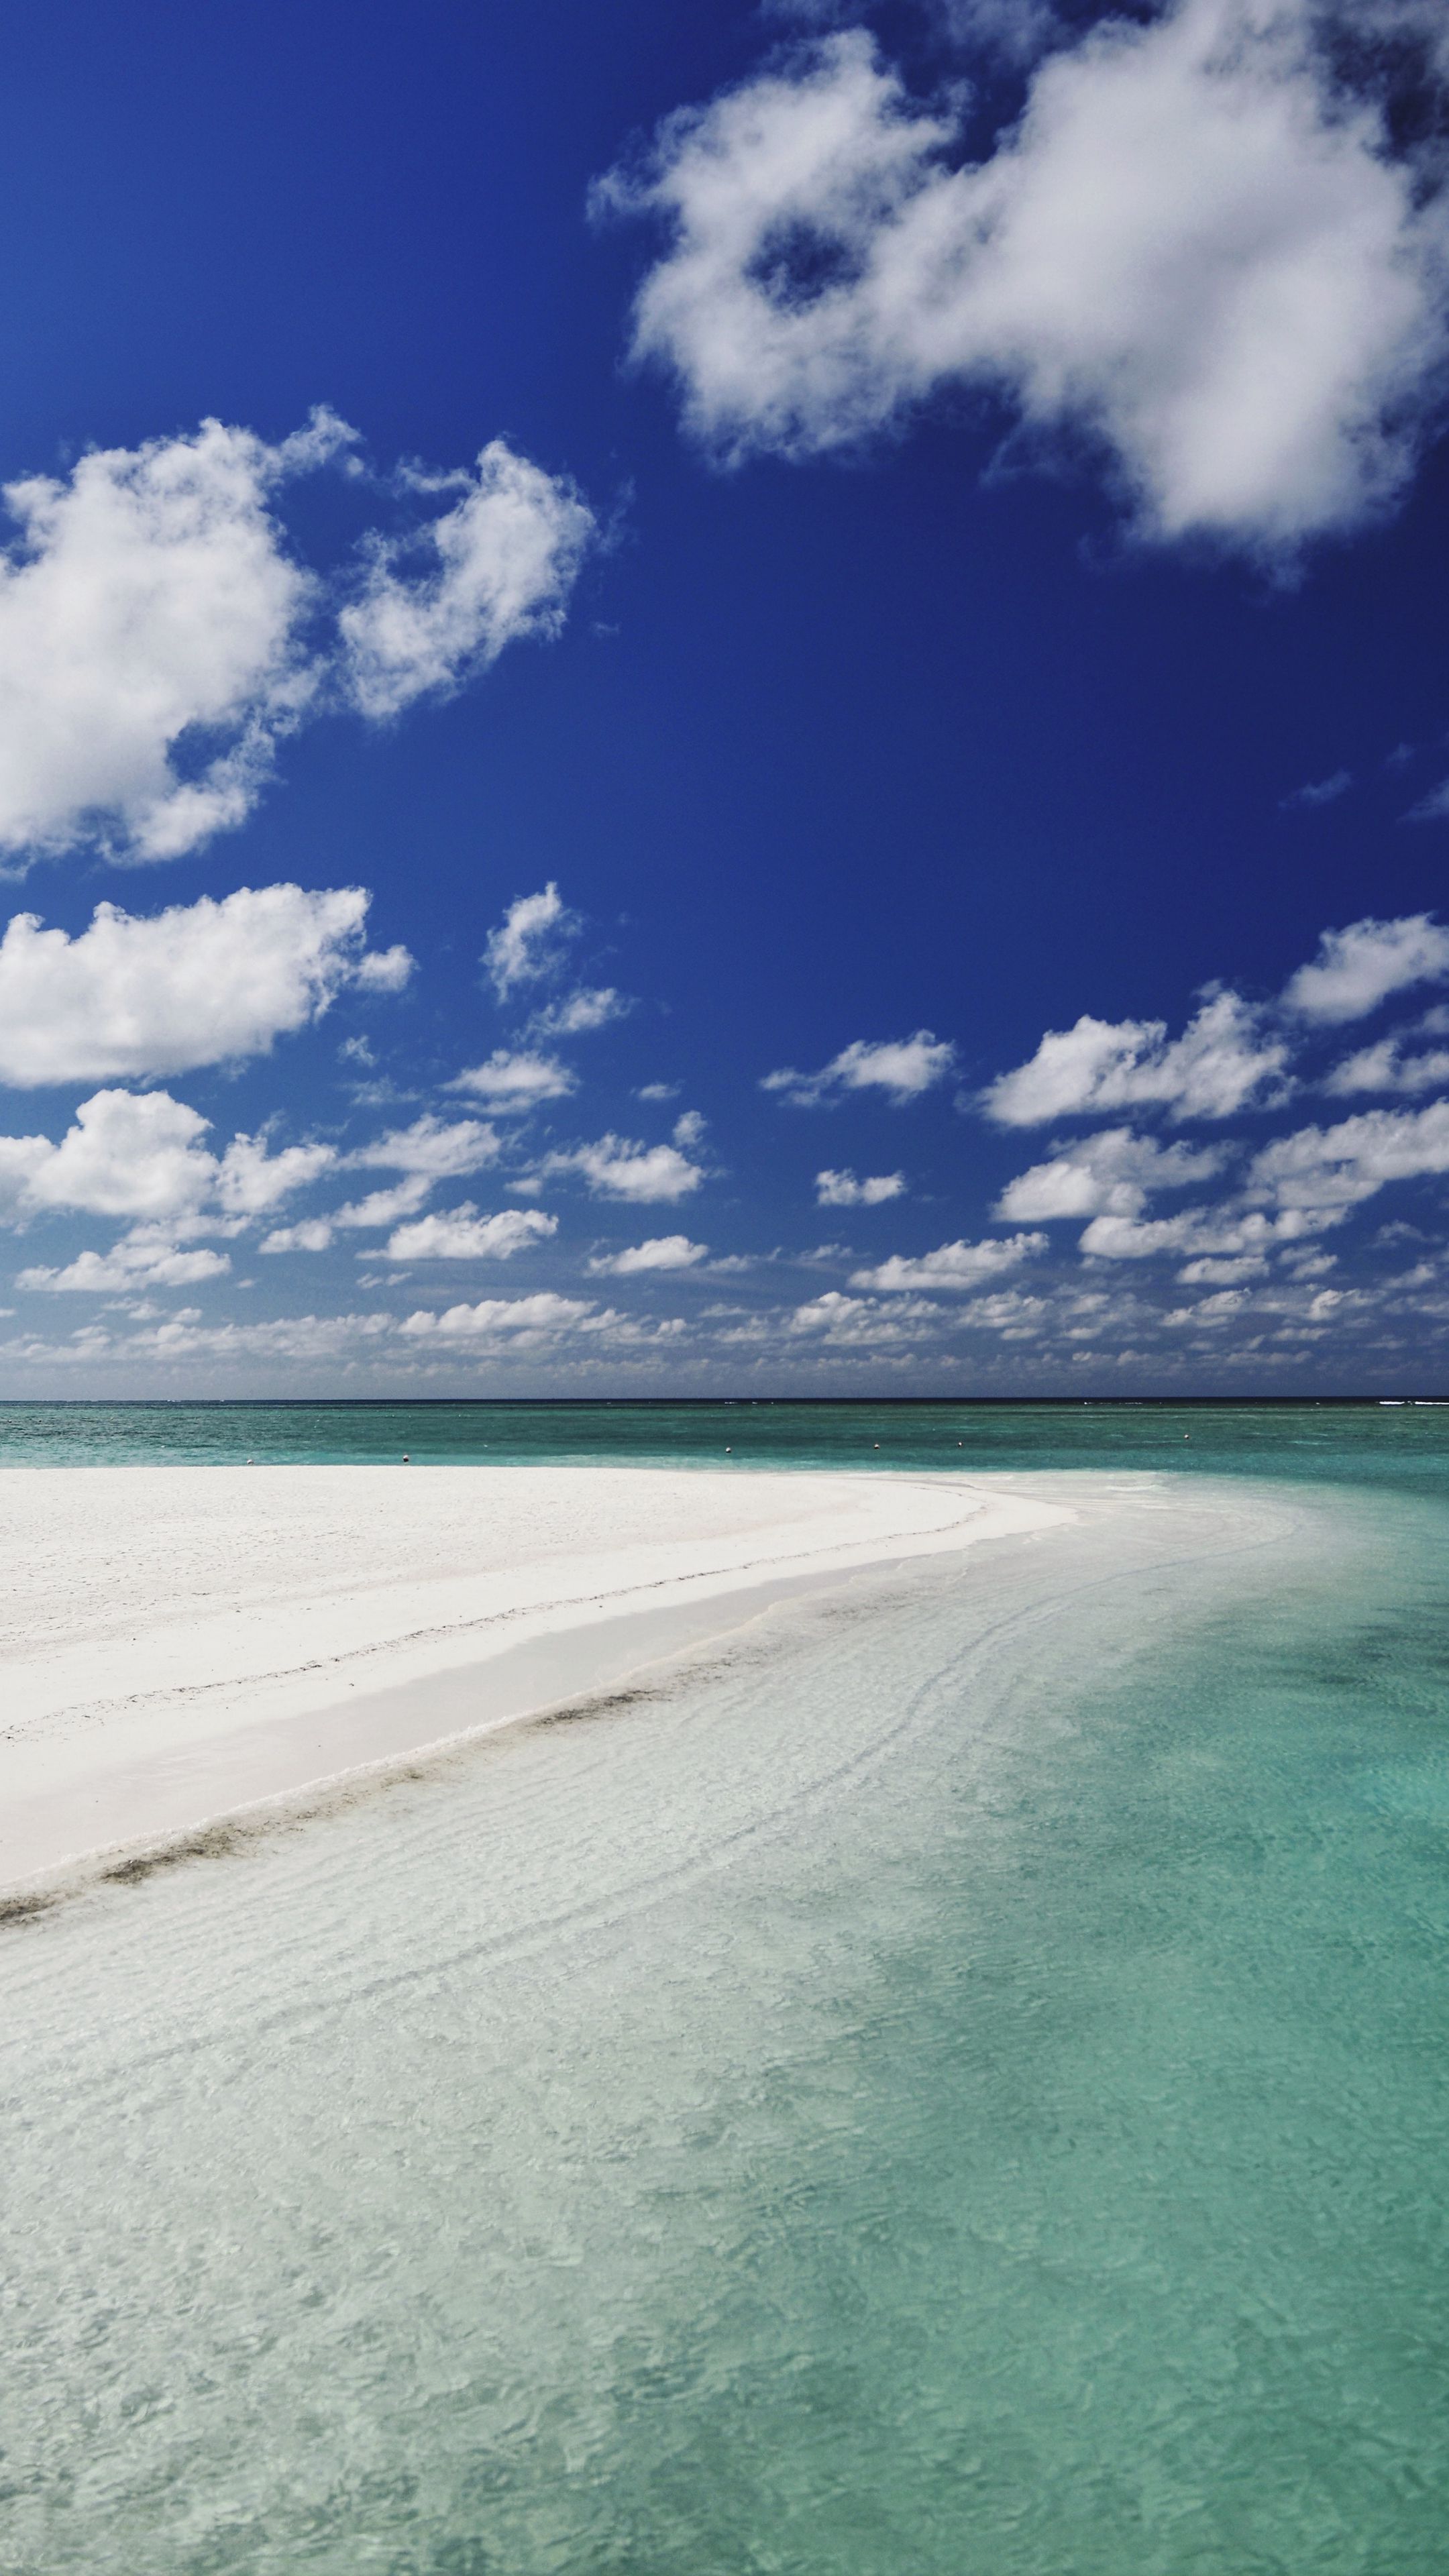 Hình nền bãi biển tuyệt đẹp sẽ khiến bạn cảm thấy như đang được đắm mình trong không gian biển xanh mát. Hãy thưởng thức hình nền này để mang lại cho bạn cảm giác thư thái và tươi mới cho ngày mới.